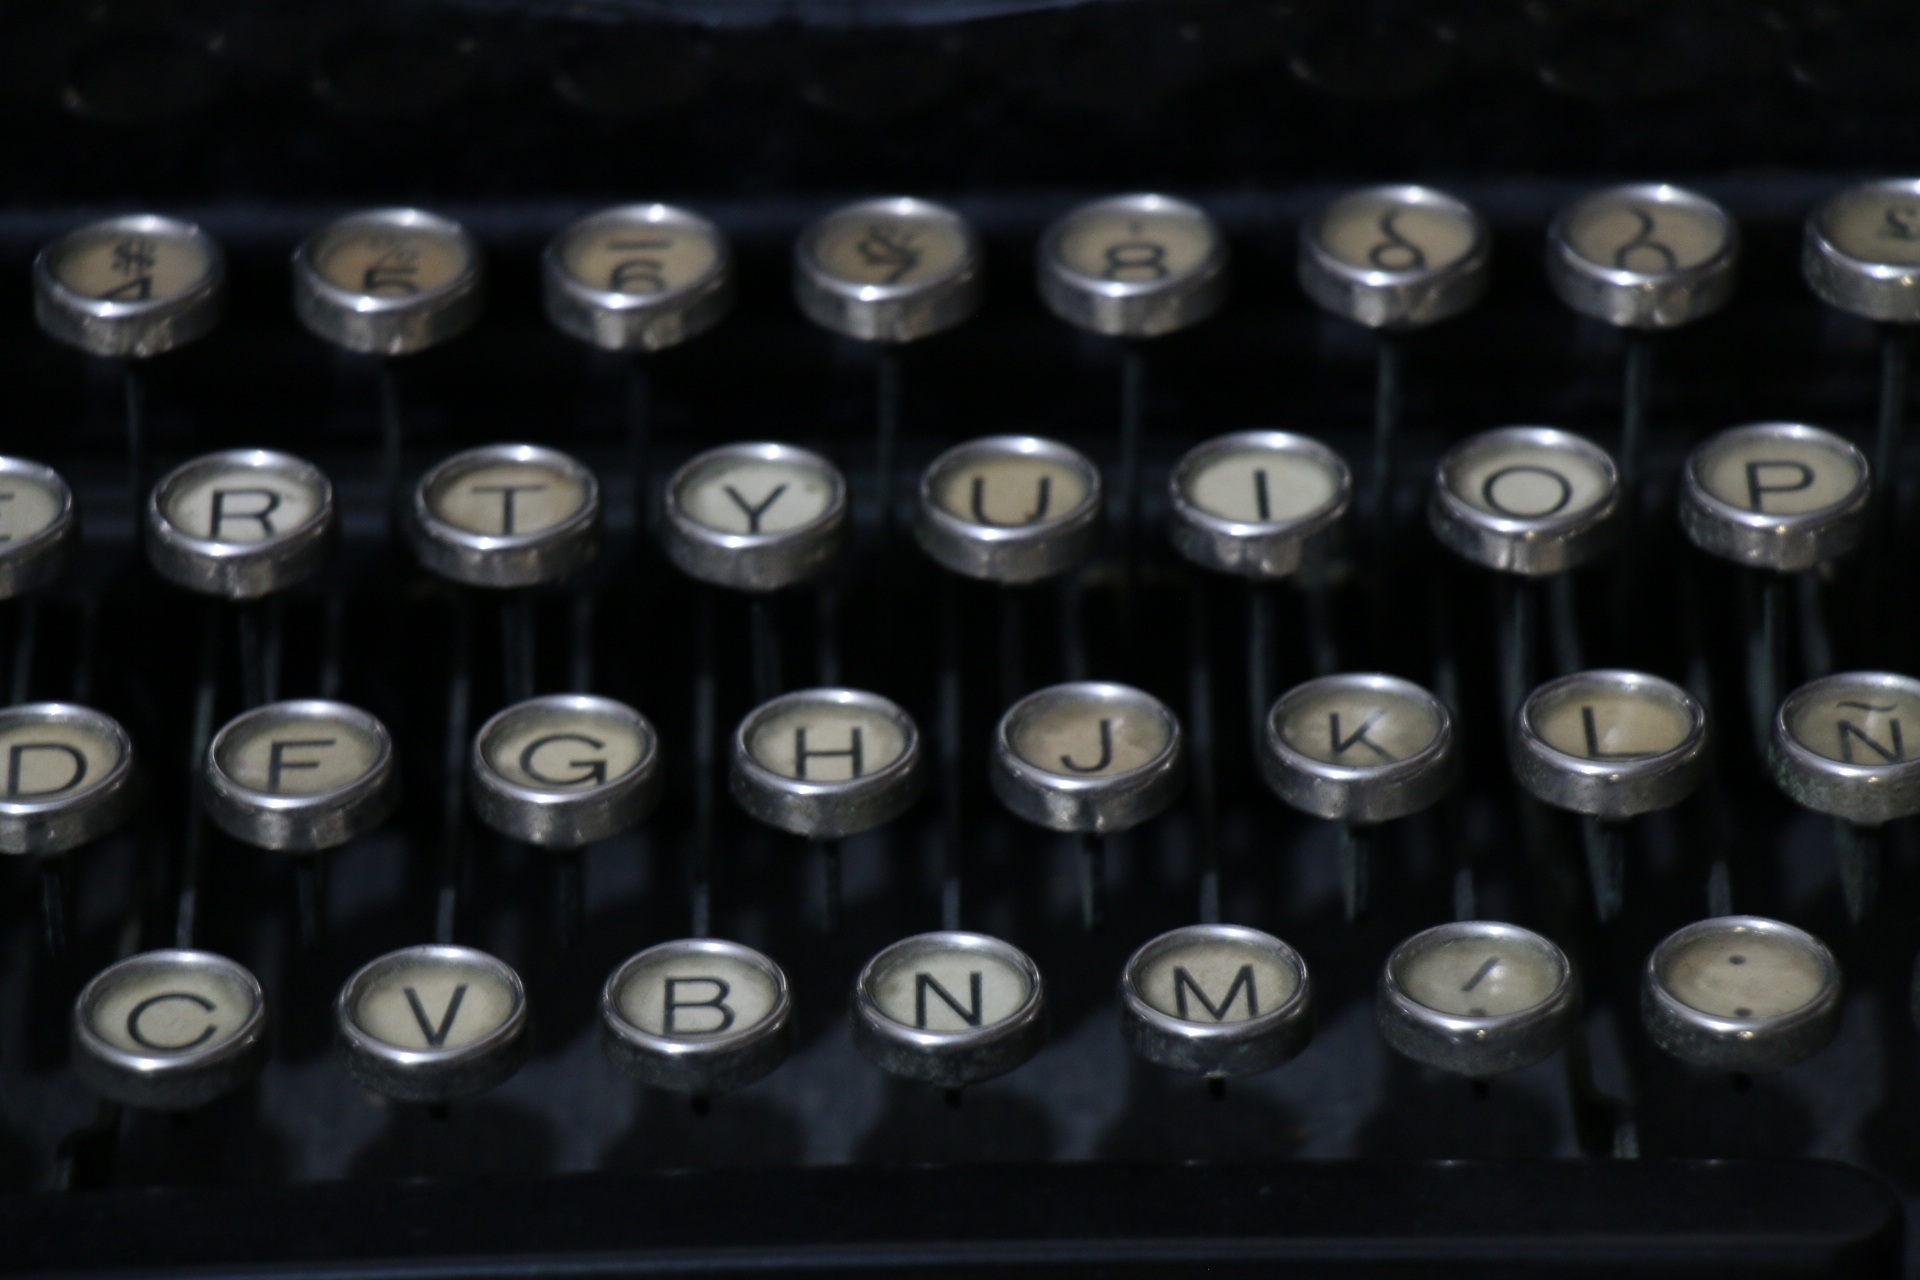 La imagen muestra el teclado de una máquina de escribir.